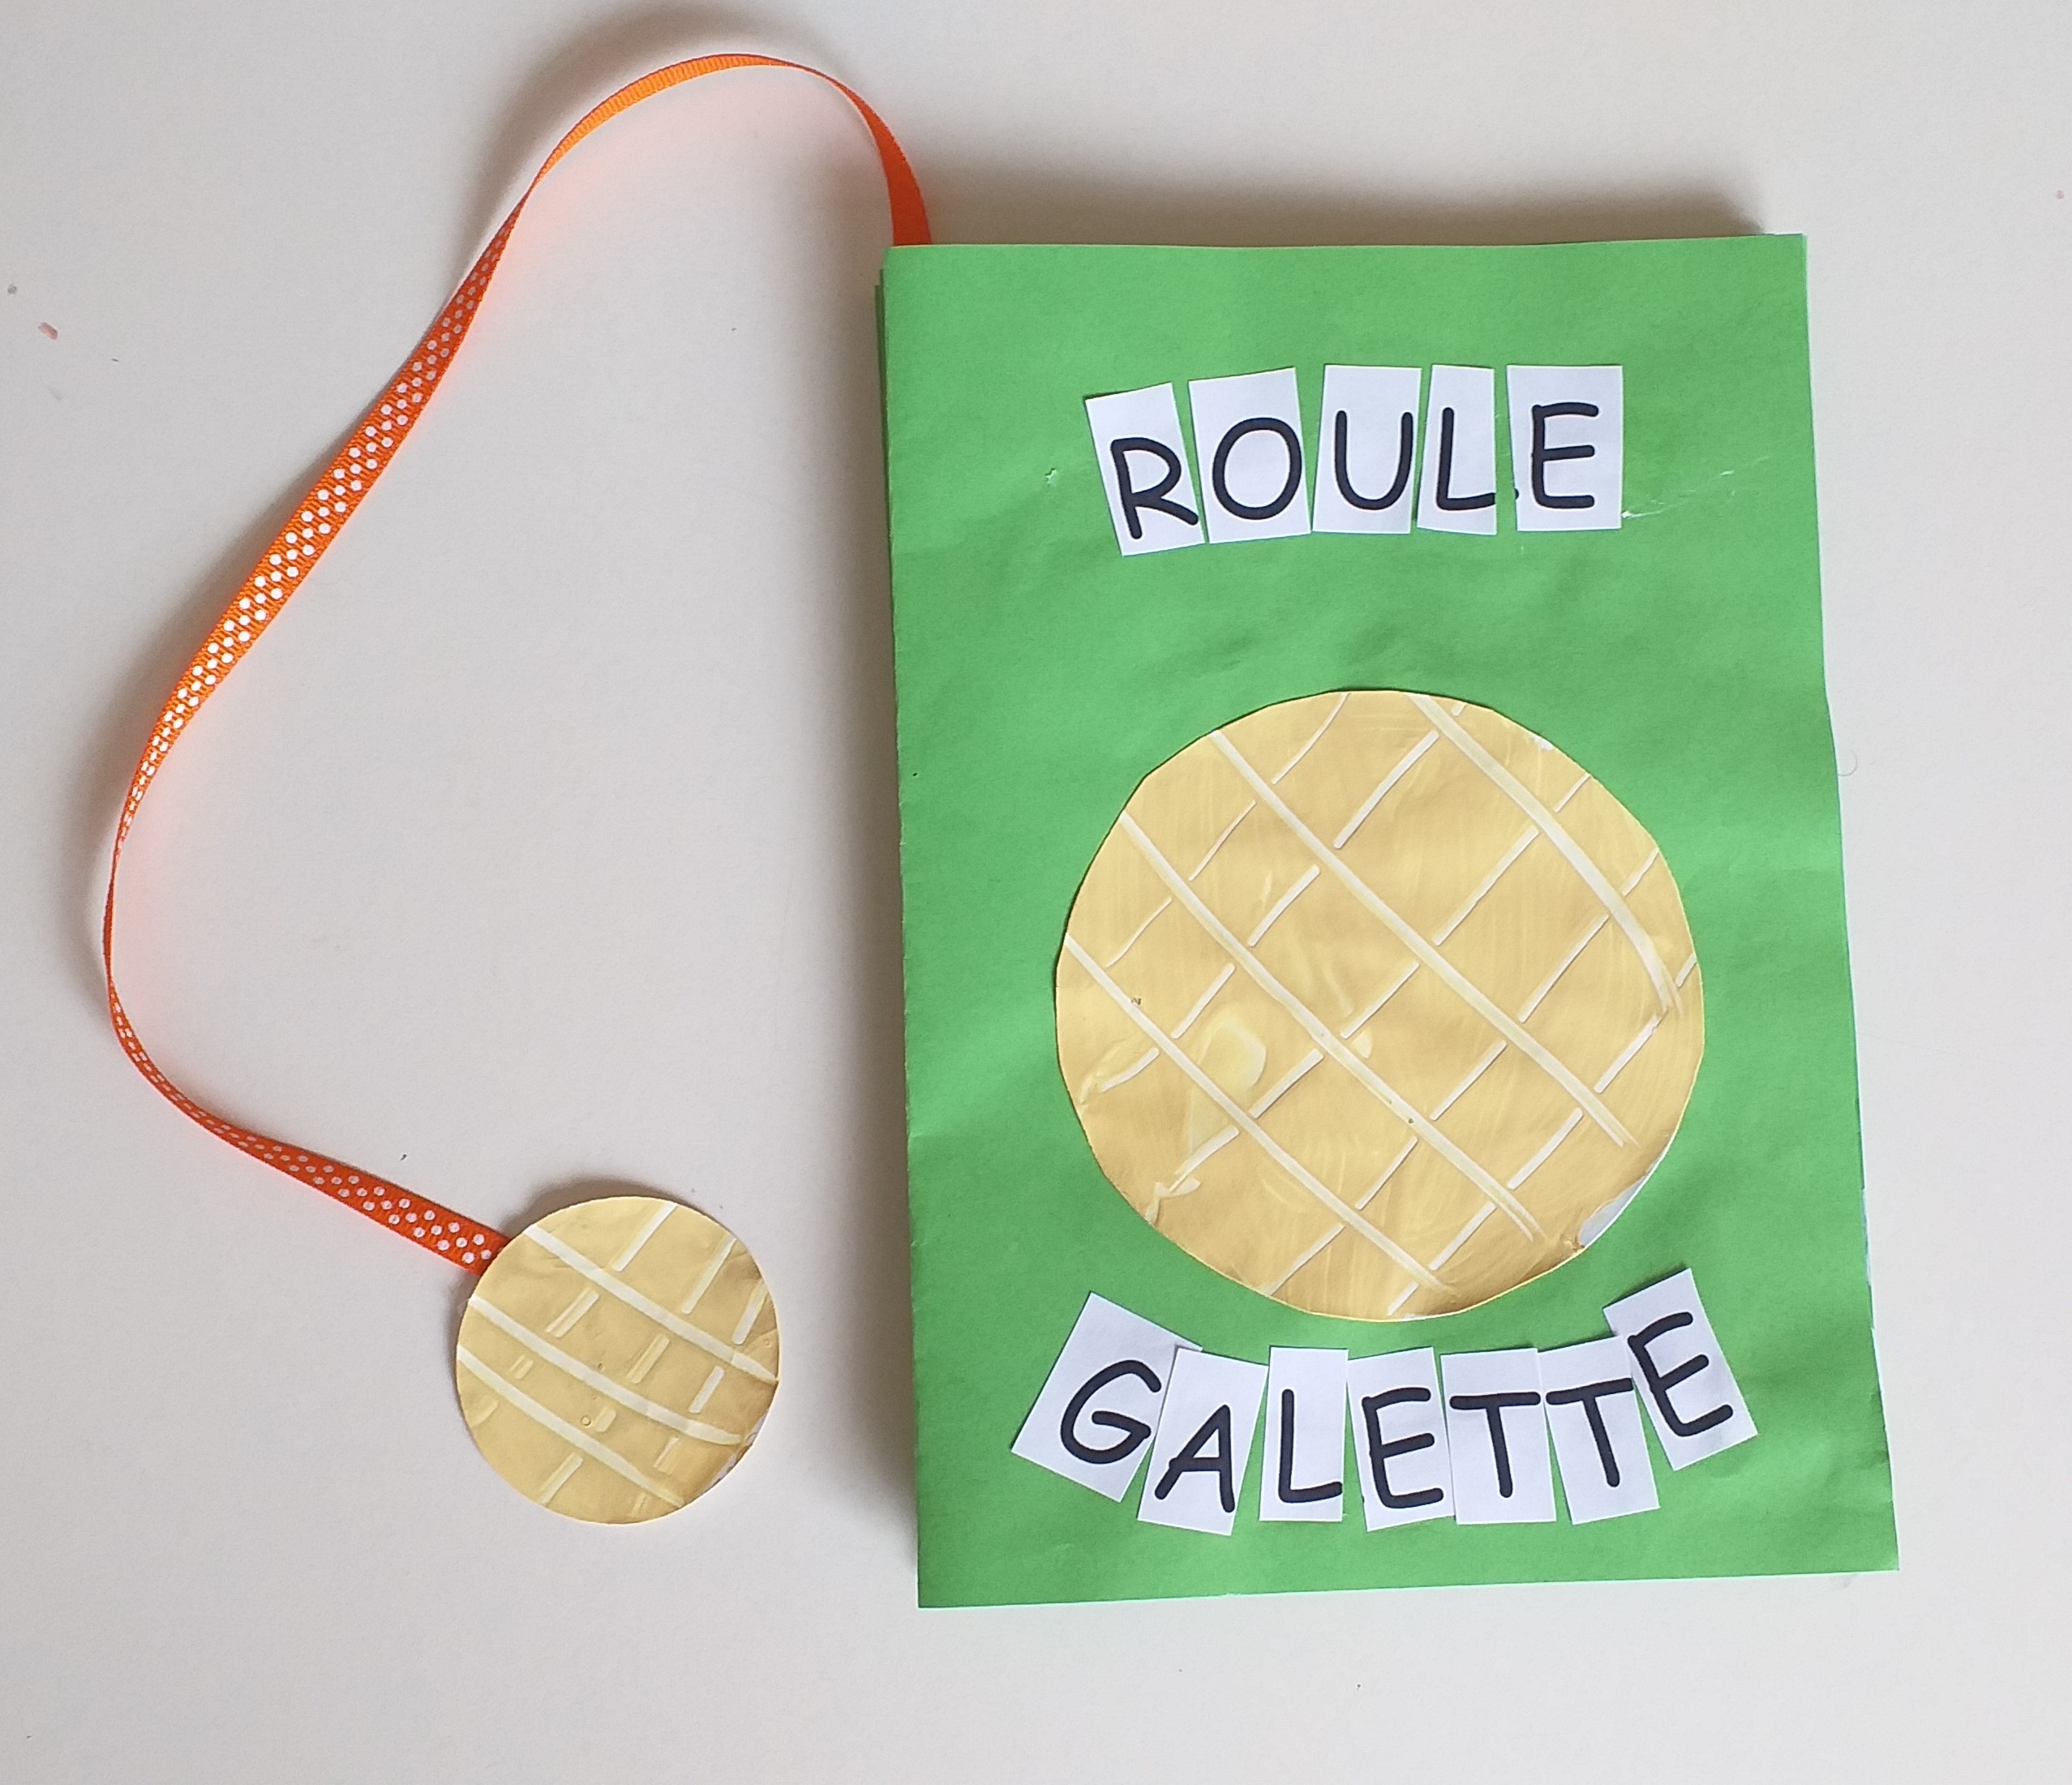 PS MS - Roule galette 2 : Le livre réalisé par les élèves - Ecole